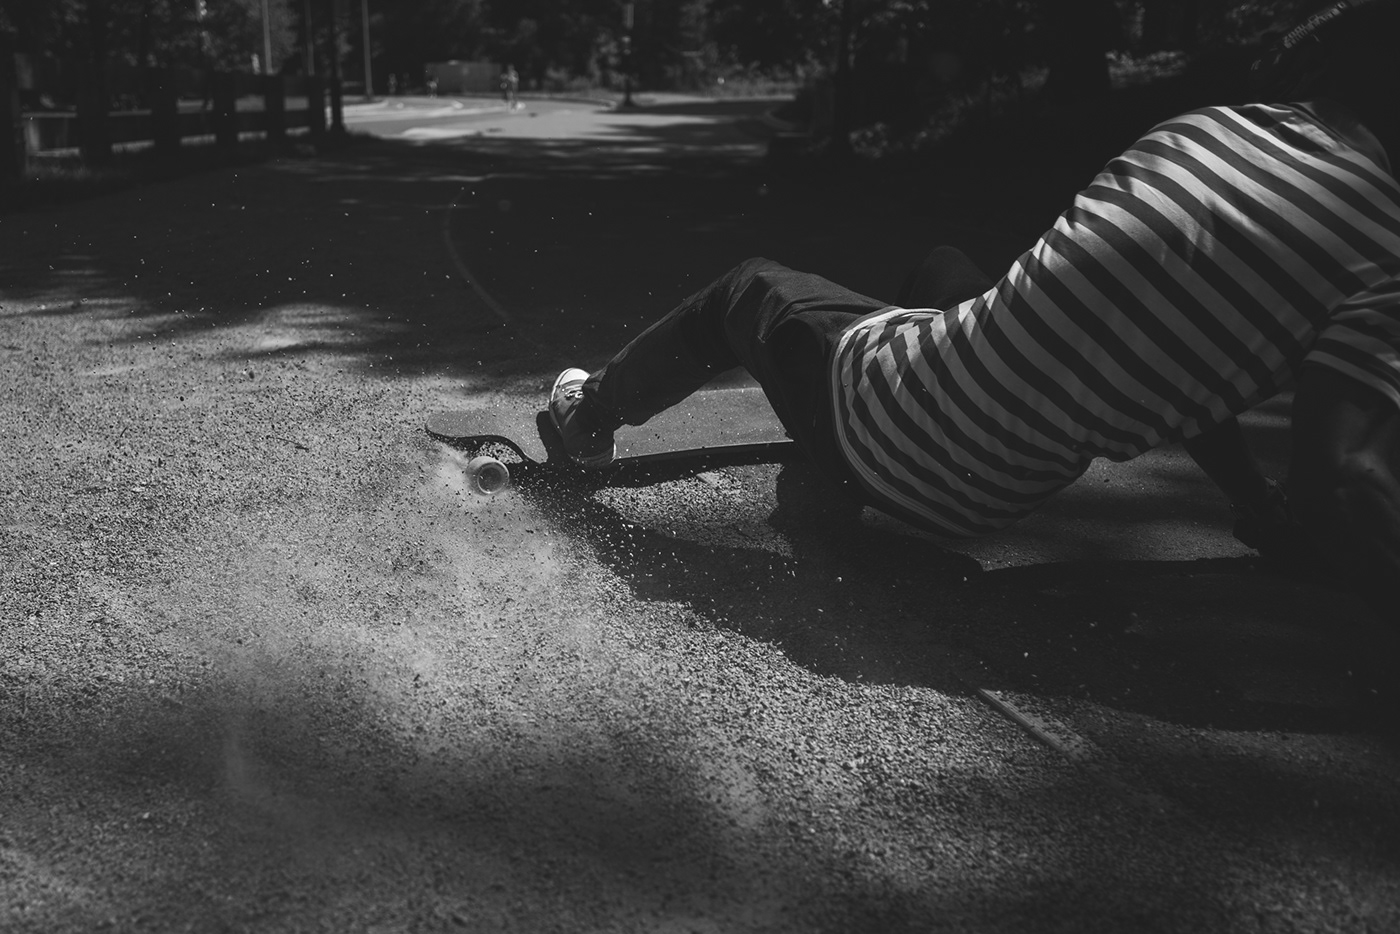 LONGBOARD longboarding skate rider Street Park Urban portrait